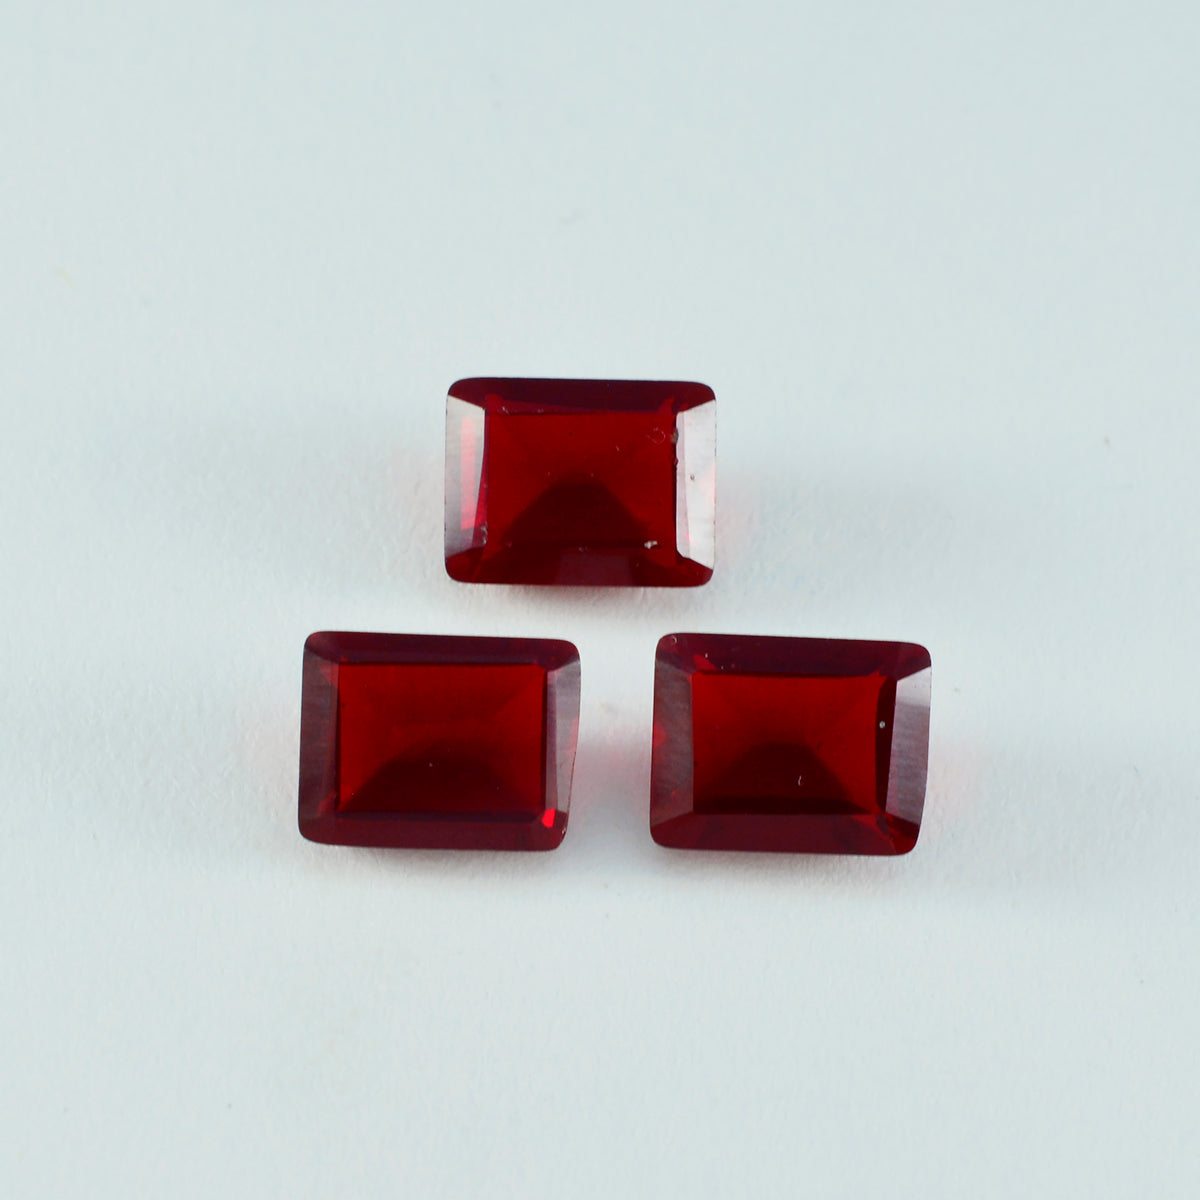 riyogems 1 шт. красный рубин cz ограненный 10x14 мм восьмиугольная форма красивый качественный свободный камень